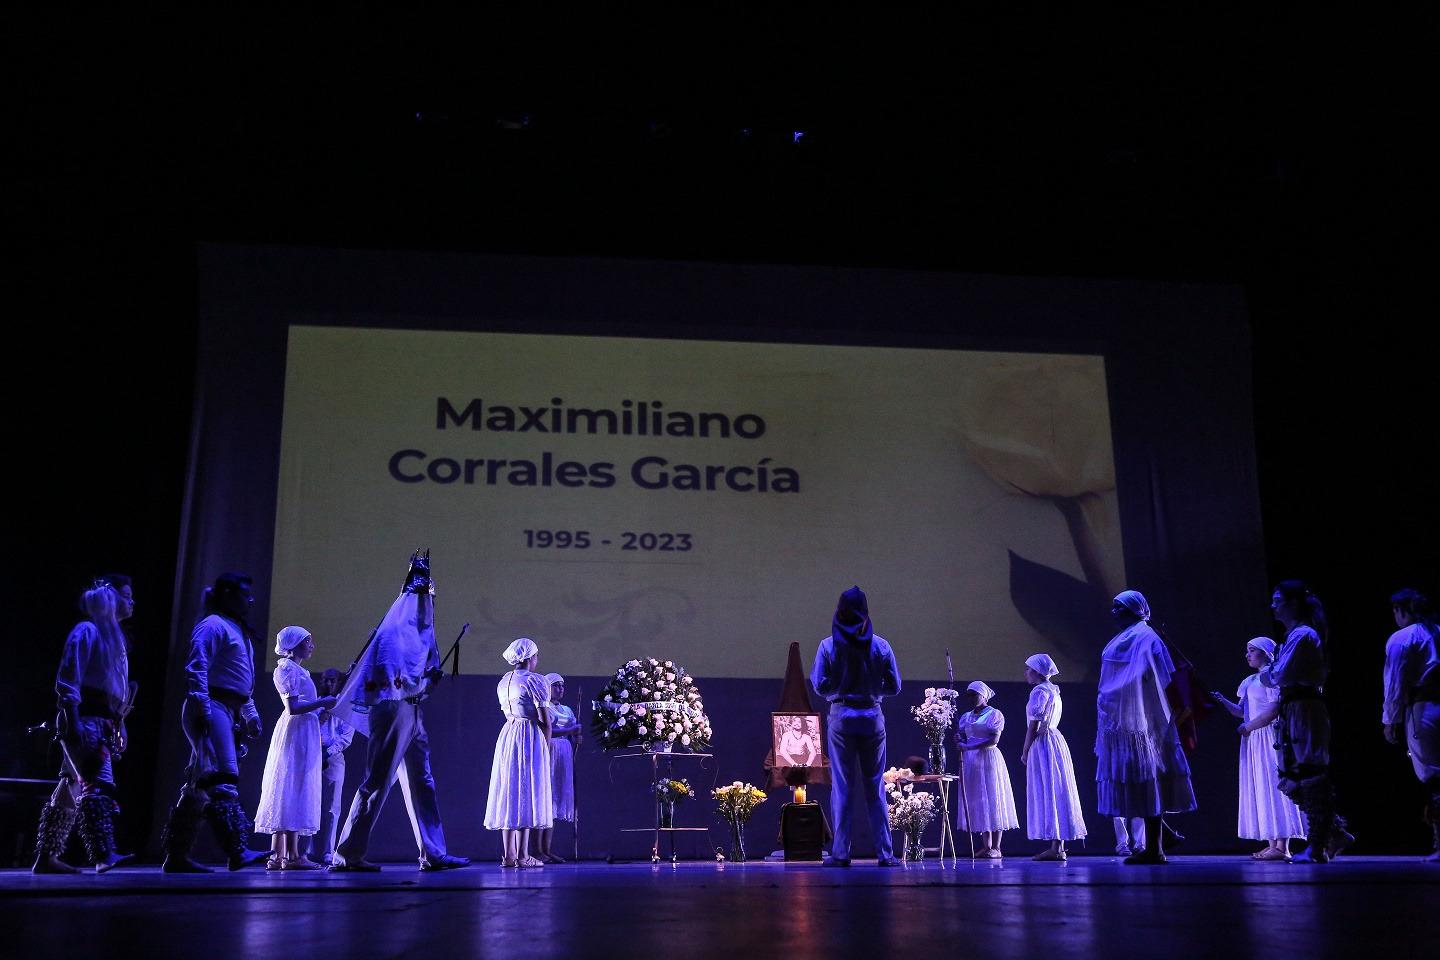 $!‘Seguirás bailando en escenarios inmunes’, recuerdan a Maximiliano Corrales